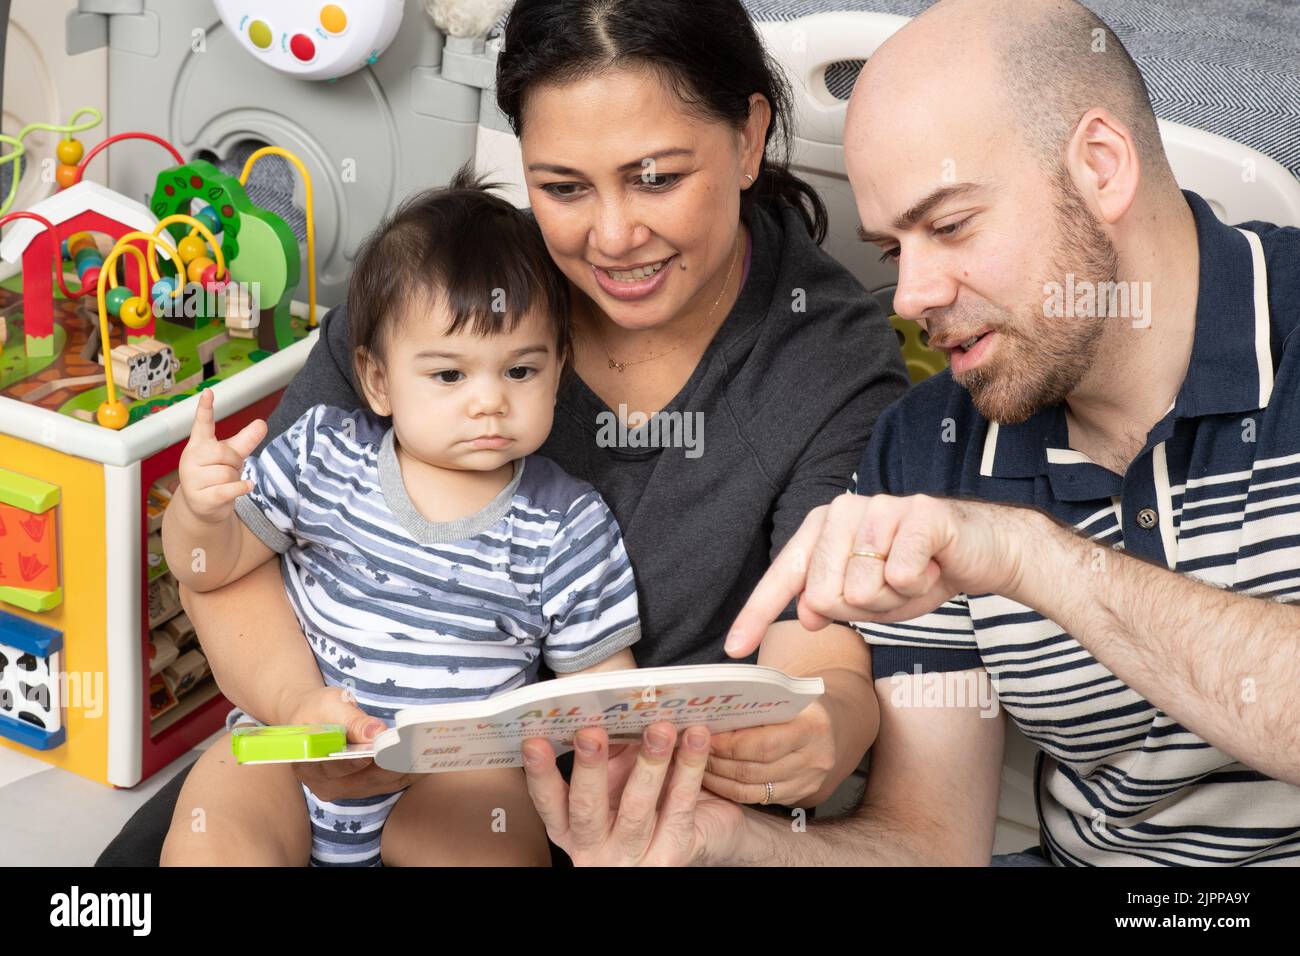 11 Monate alter Junge zu Hause von den Eltern vorgelesen, Vater mit Zeigefinger, um die Aufmerksamkeit auf etwas im Buch zu rufen, Baby hält Zeiger Figur Stockfoto